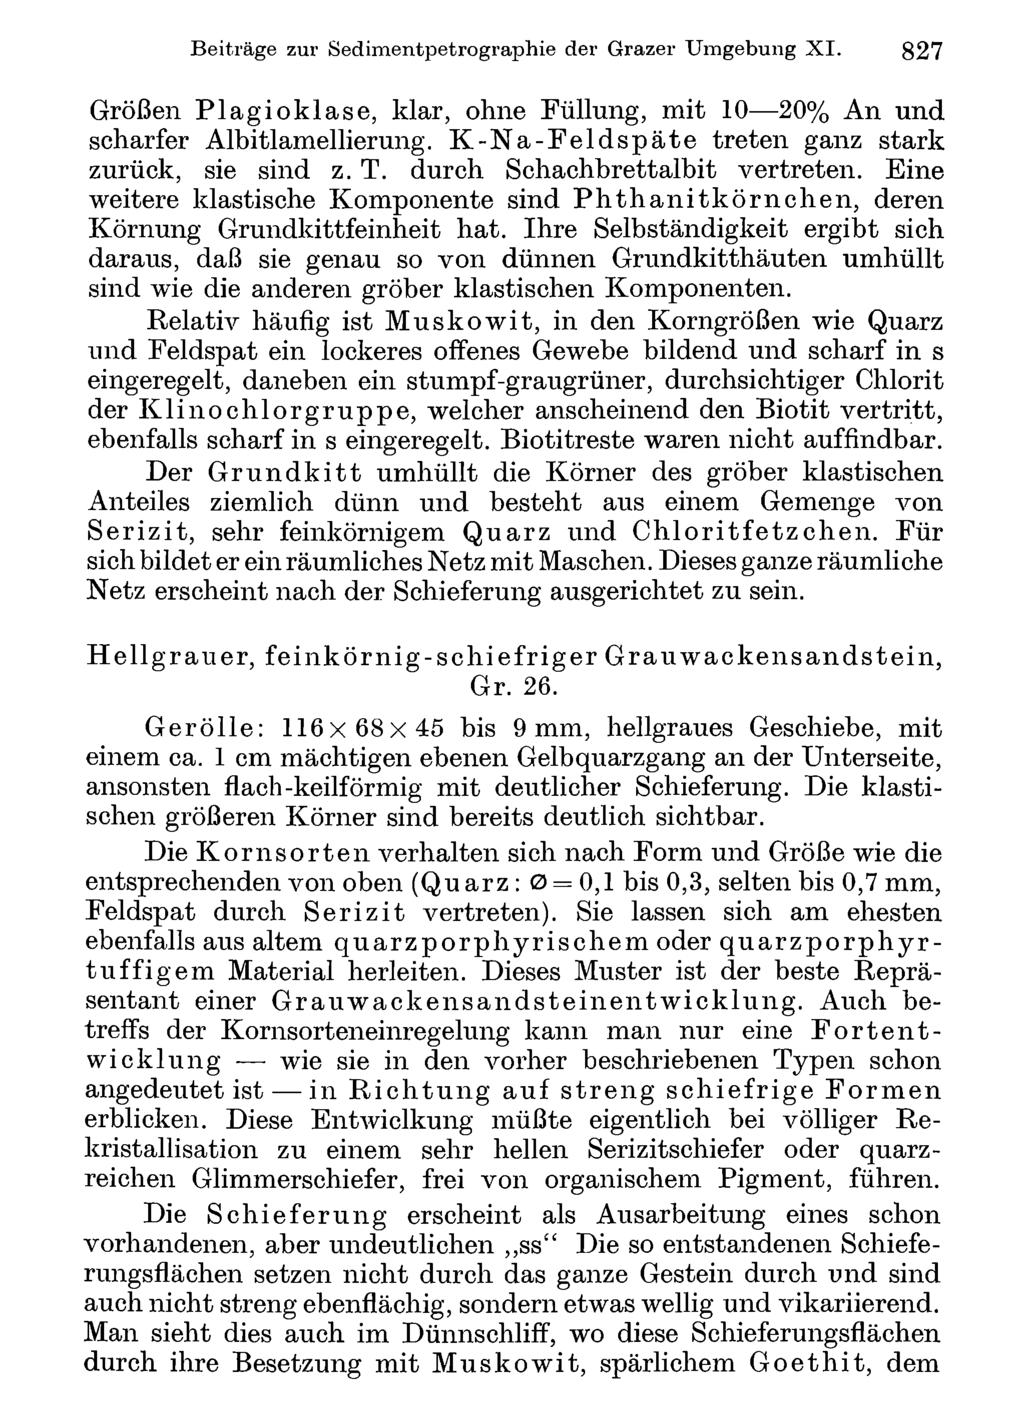 Beiträge Akademie zur Sedimentpetrographie d. Wissenschaften Wien; download der unter Grazer www.biologiezentrum.at Umgebung X I.